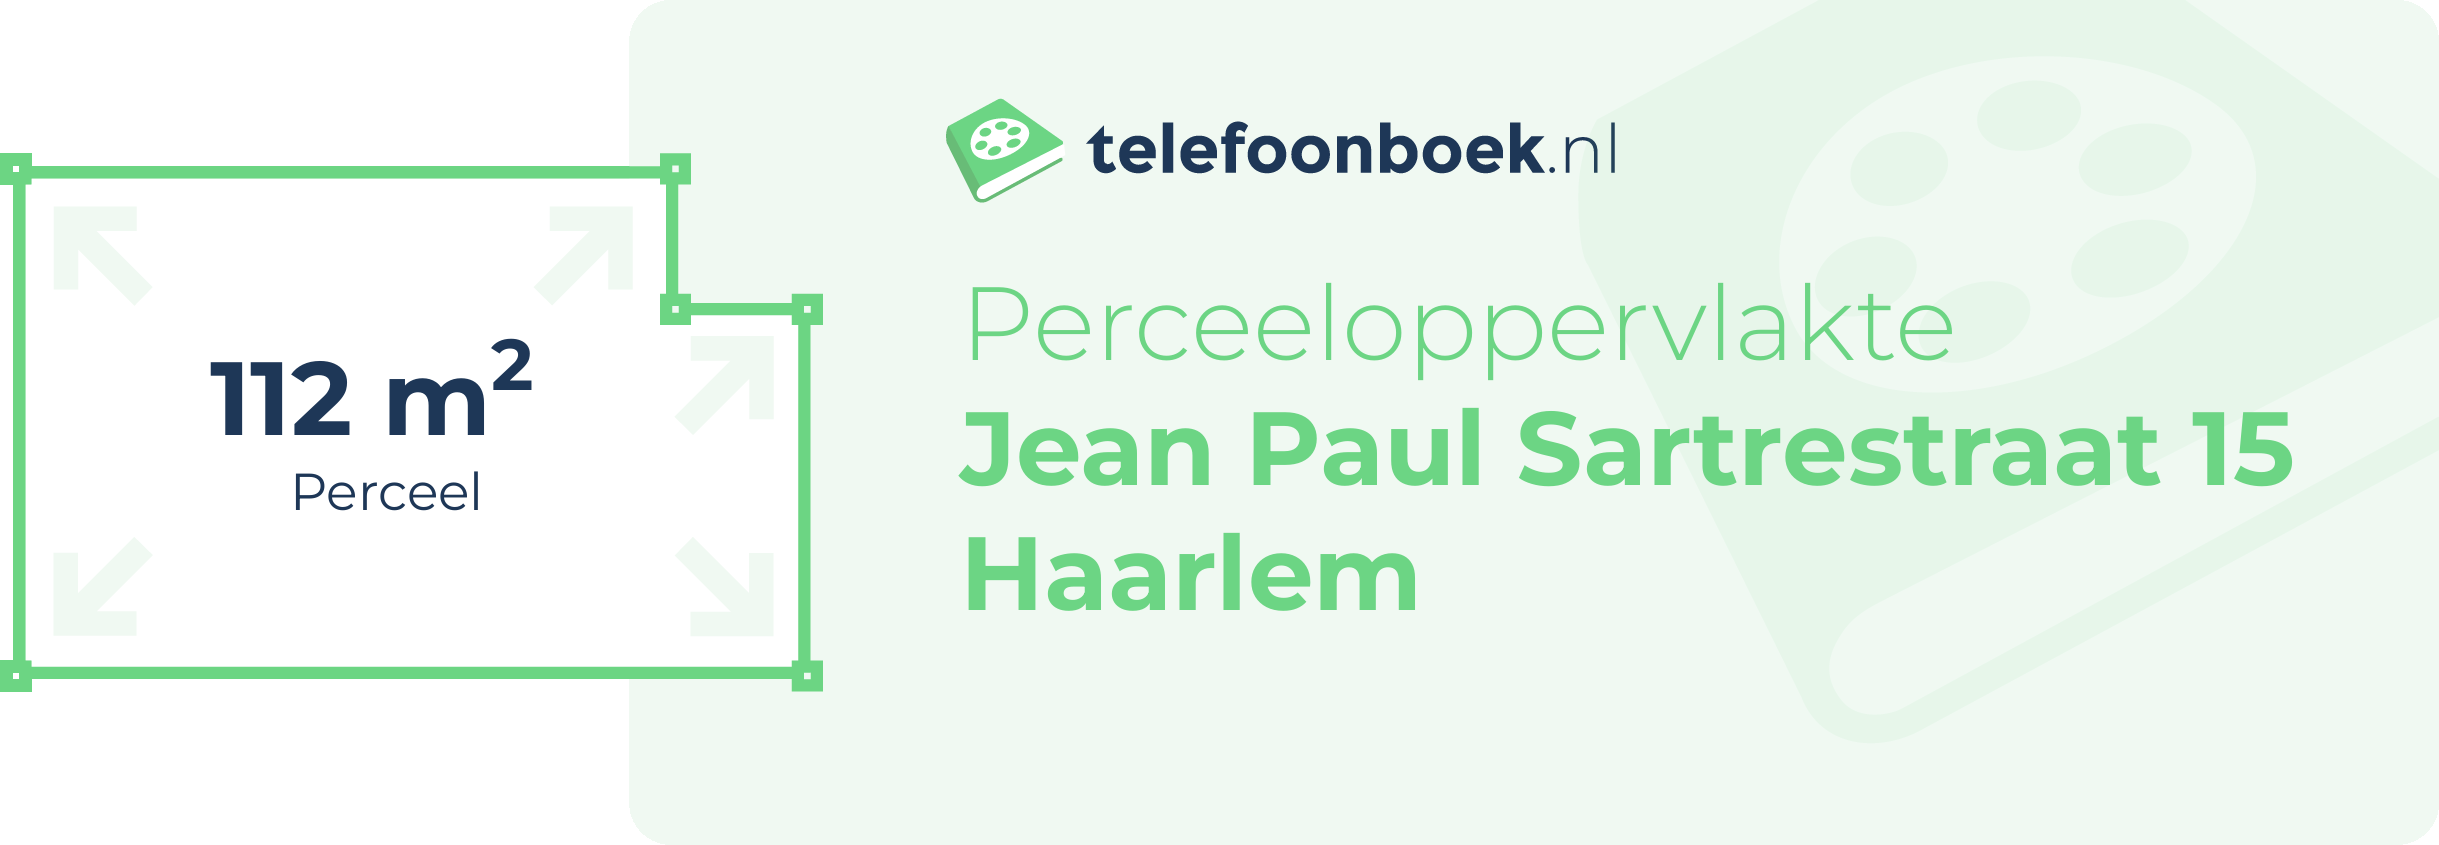 Perceeloppervlakte Jean Paul Sartrestraat 15 Haarlem